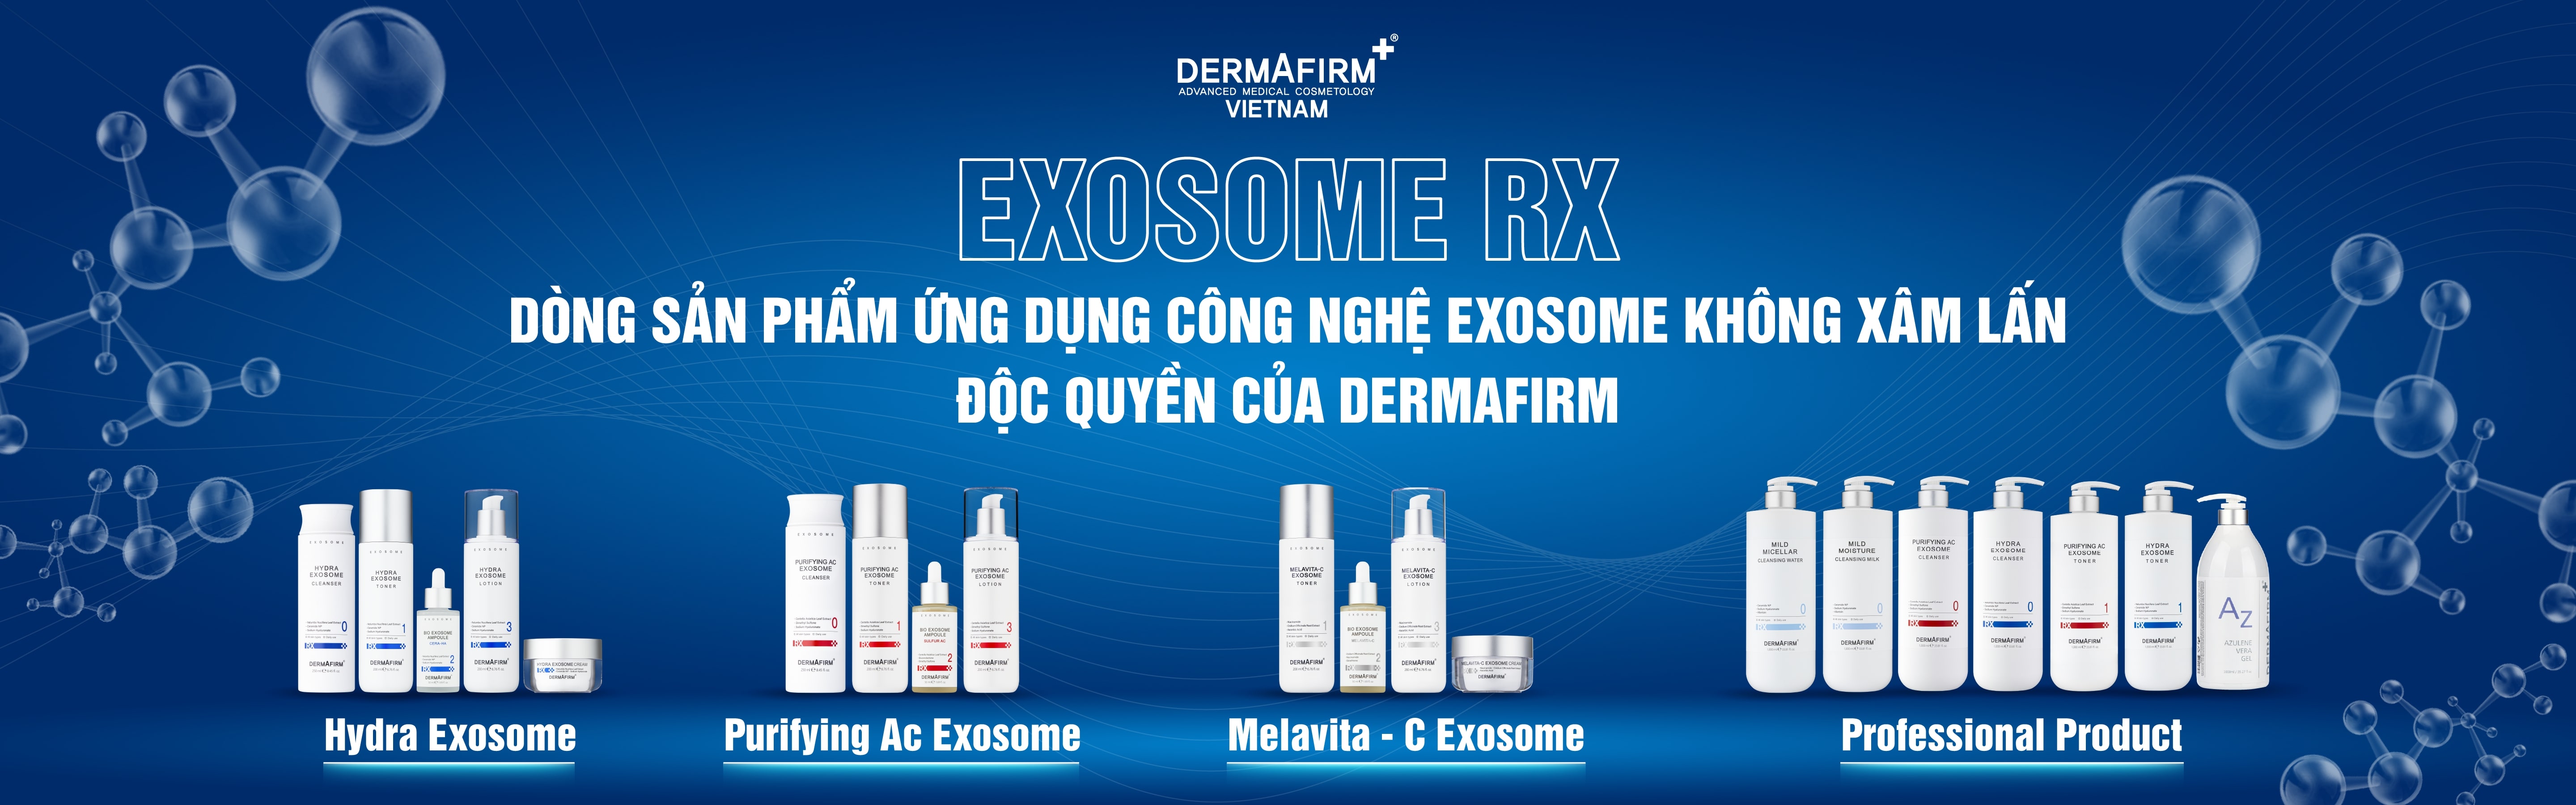 Bộ Purifying AC Exosome - Bộ đặc trị kháng khuẩn, giảm dầu, trị mụn